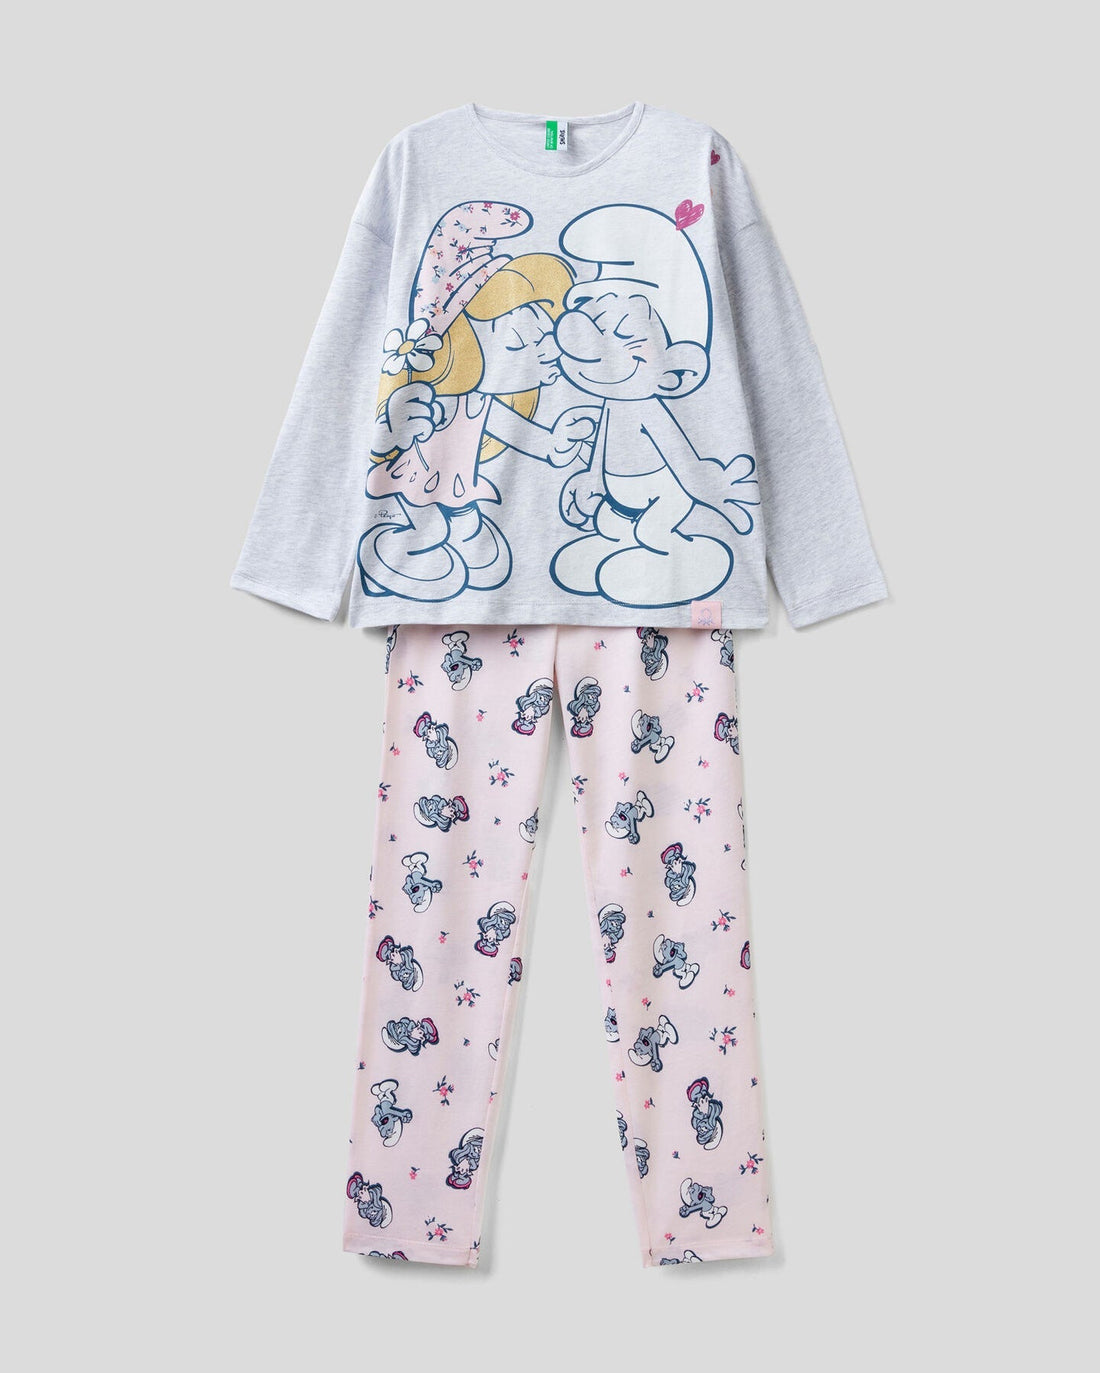 Light Grey Smurfs Pyjamas In Cotton And Viscose